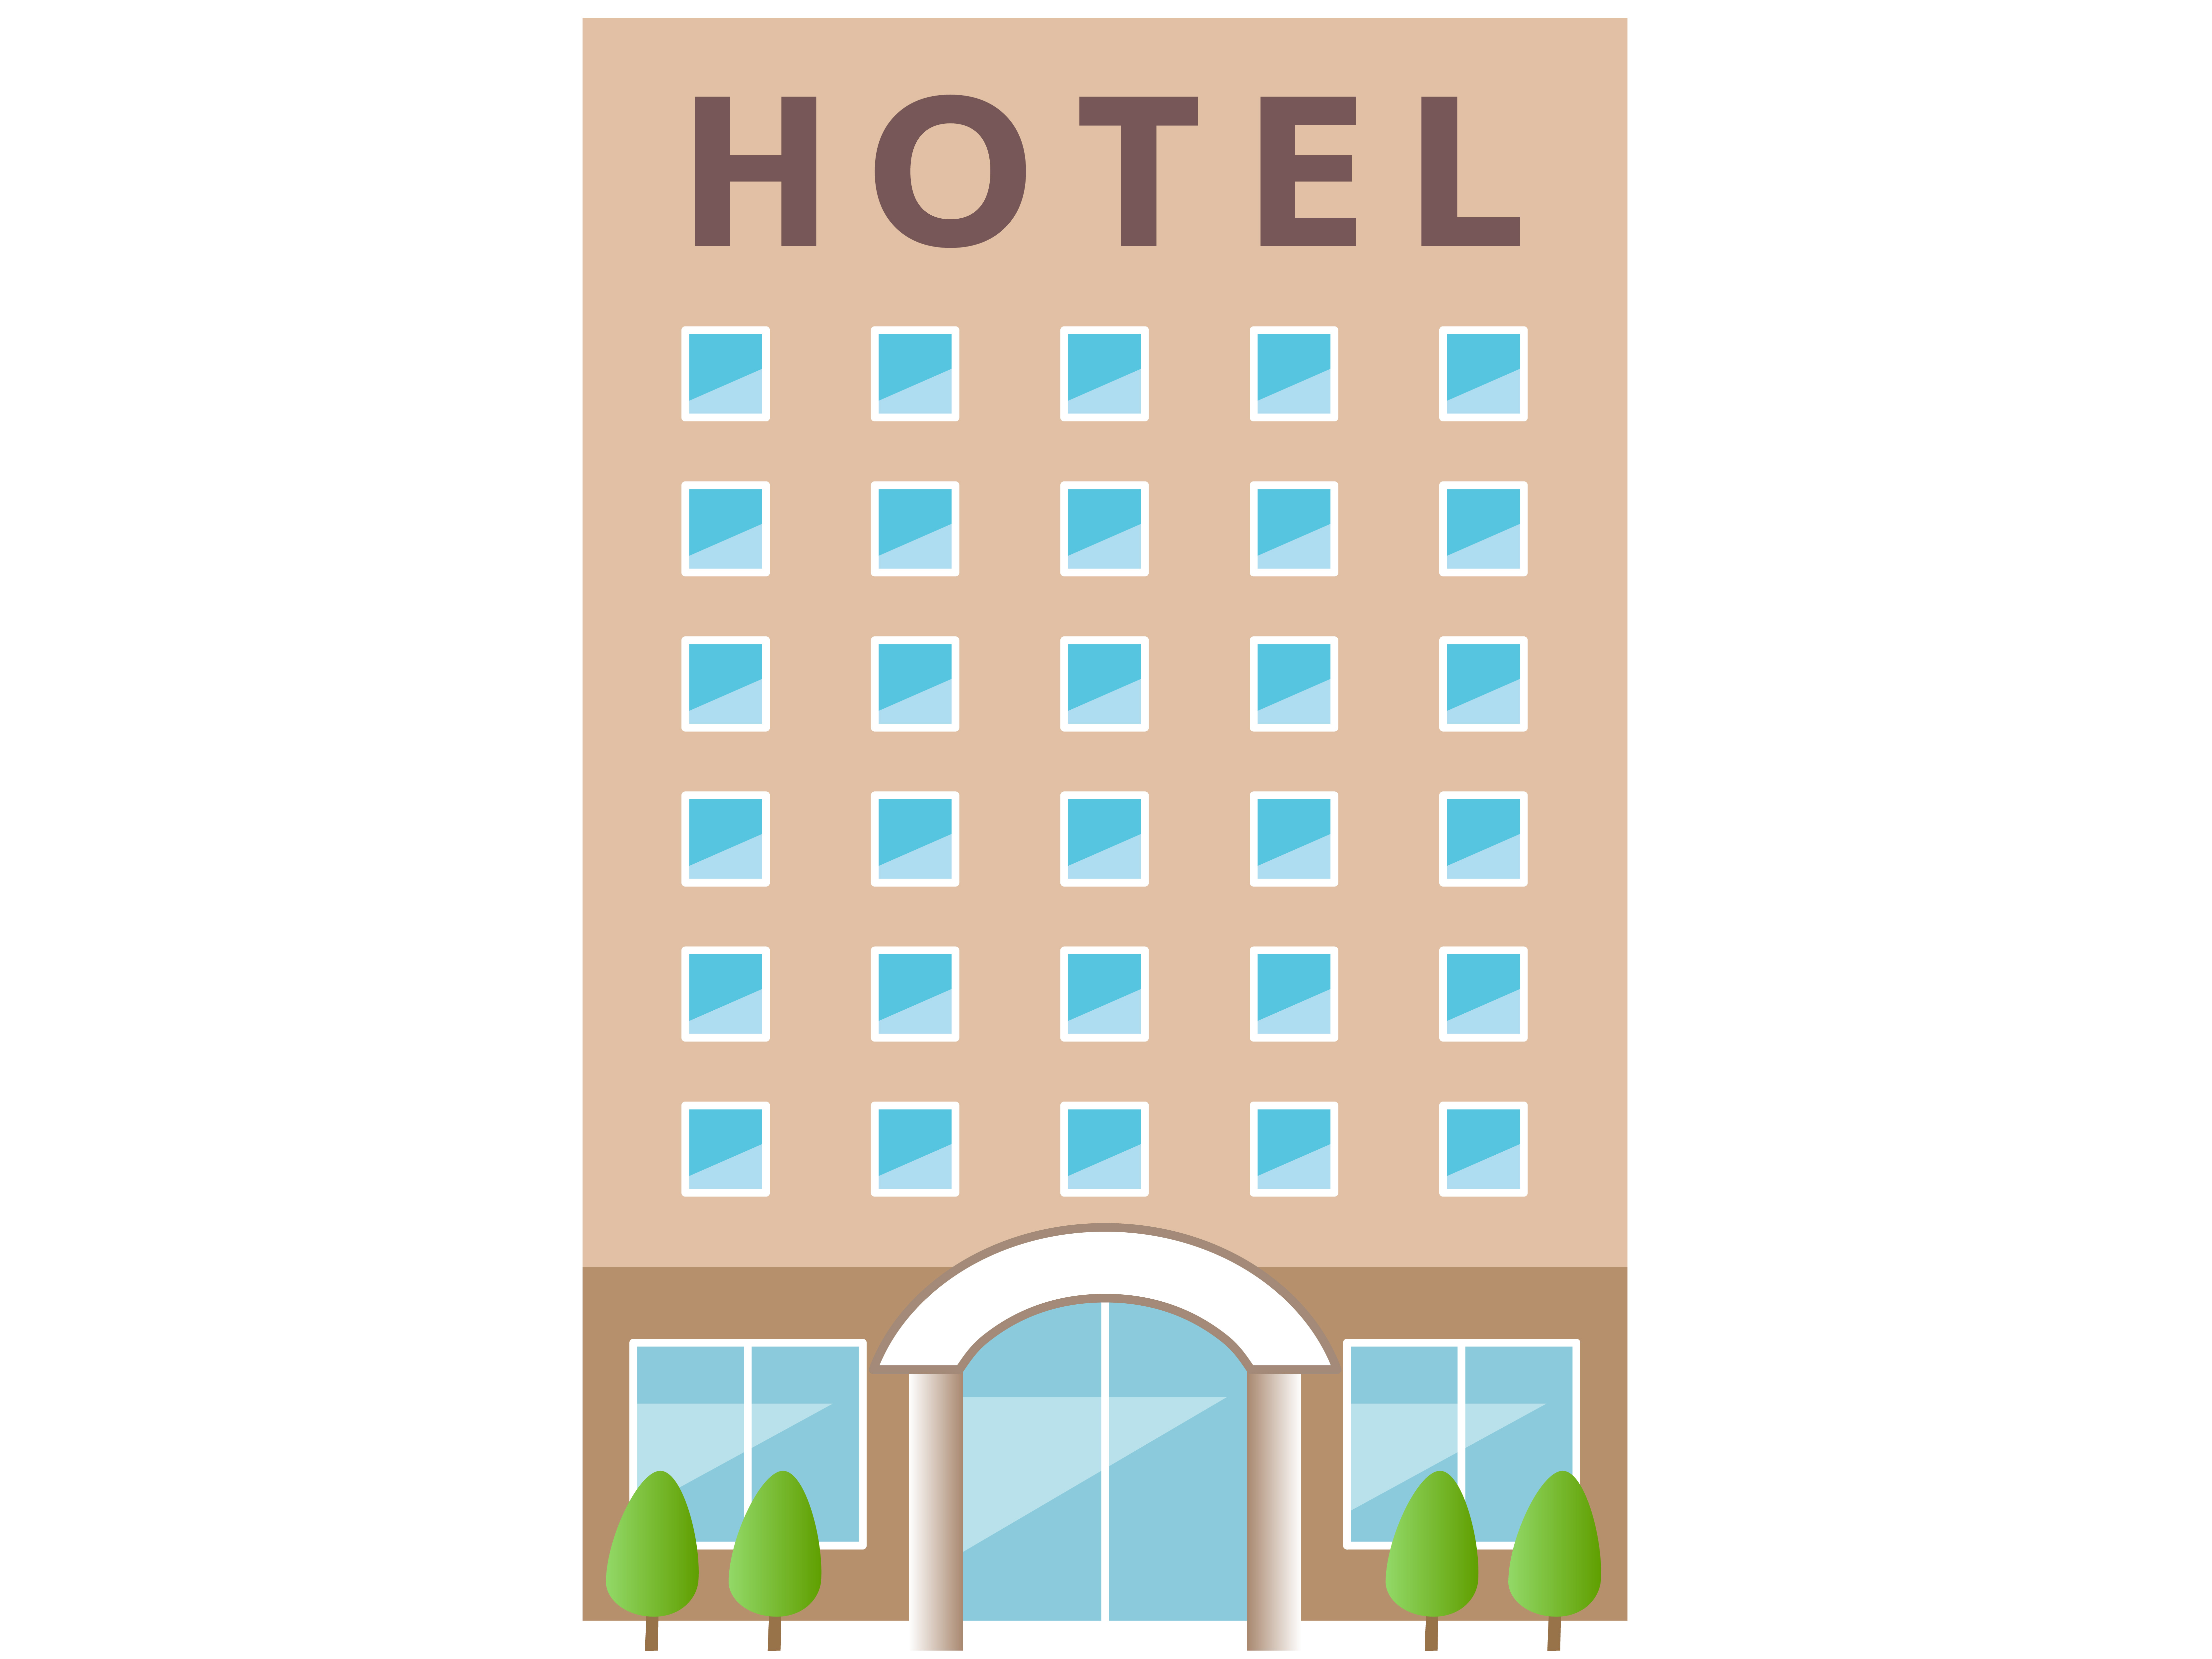 osaka_hotel_2020_1.jpg